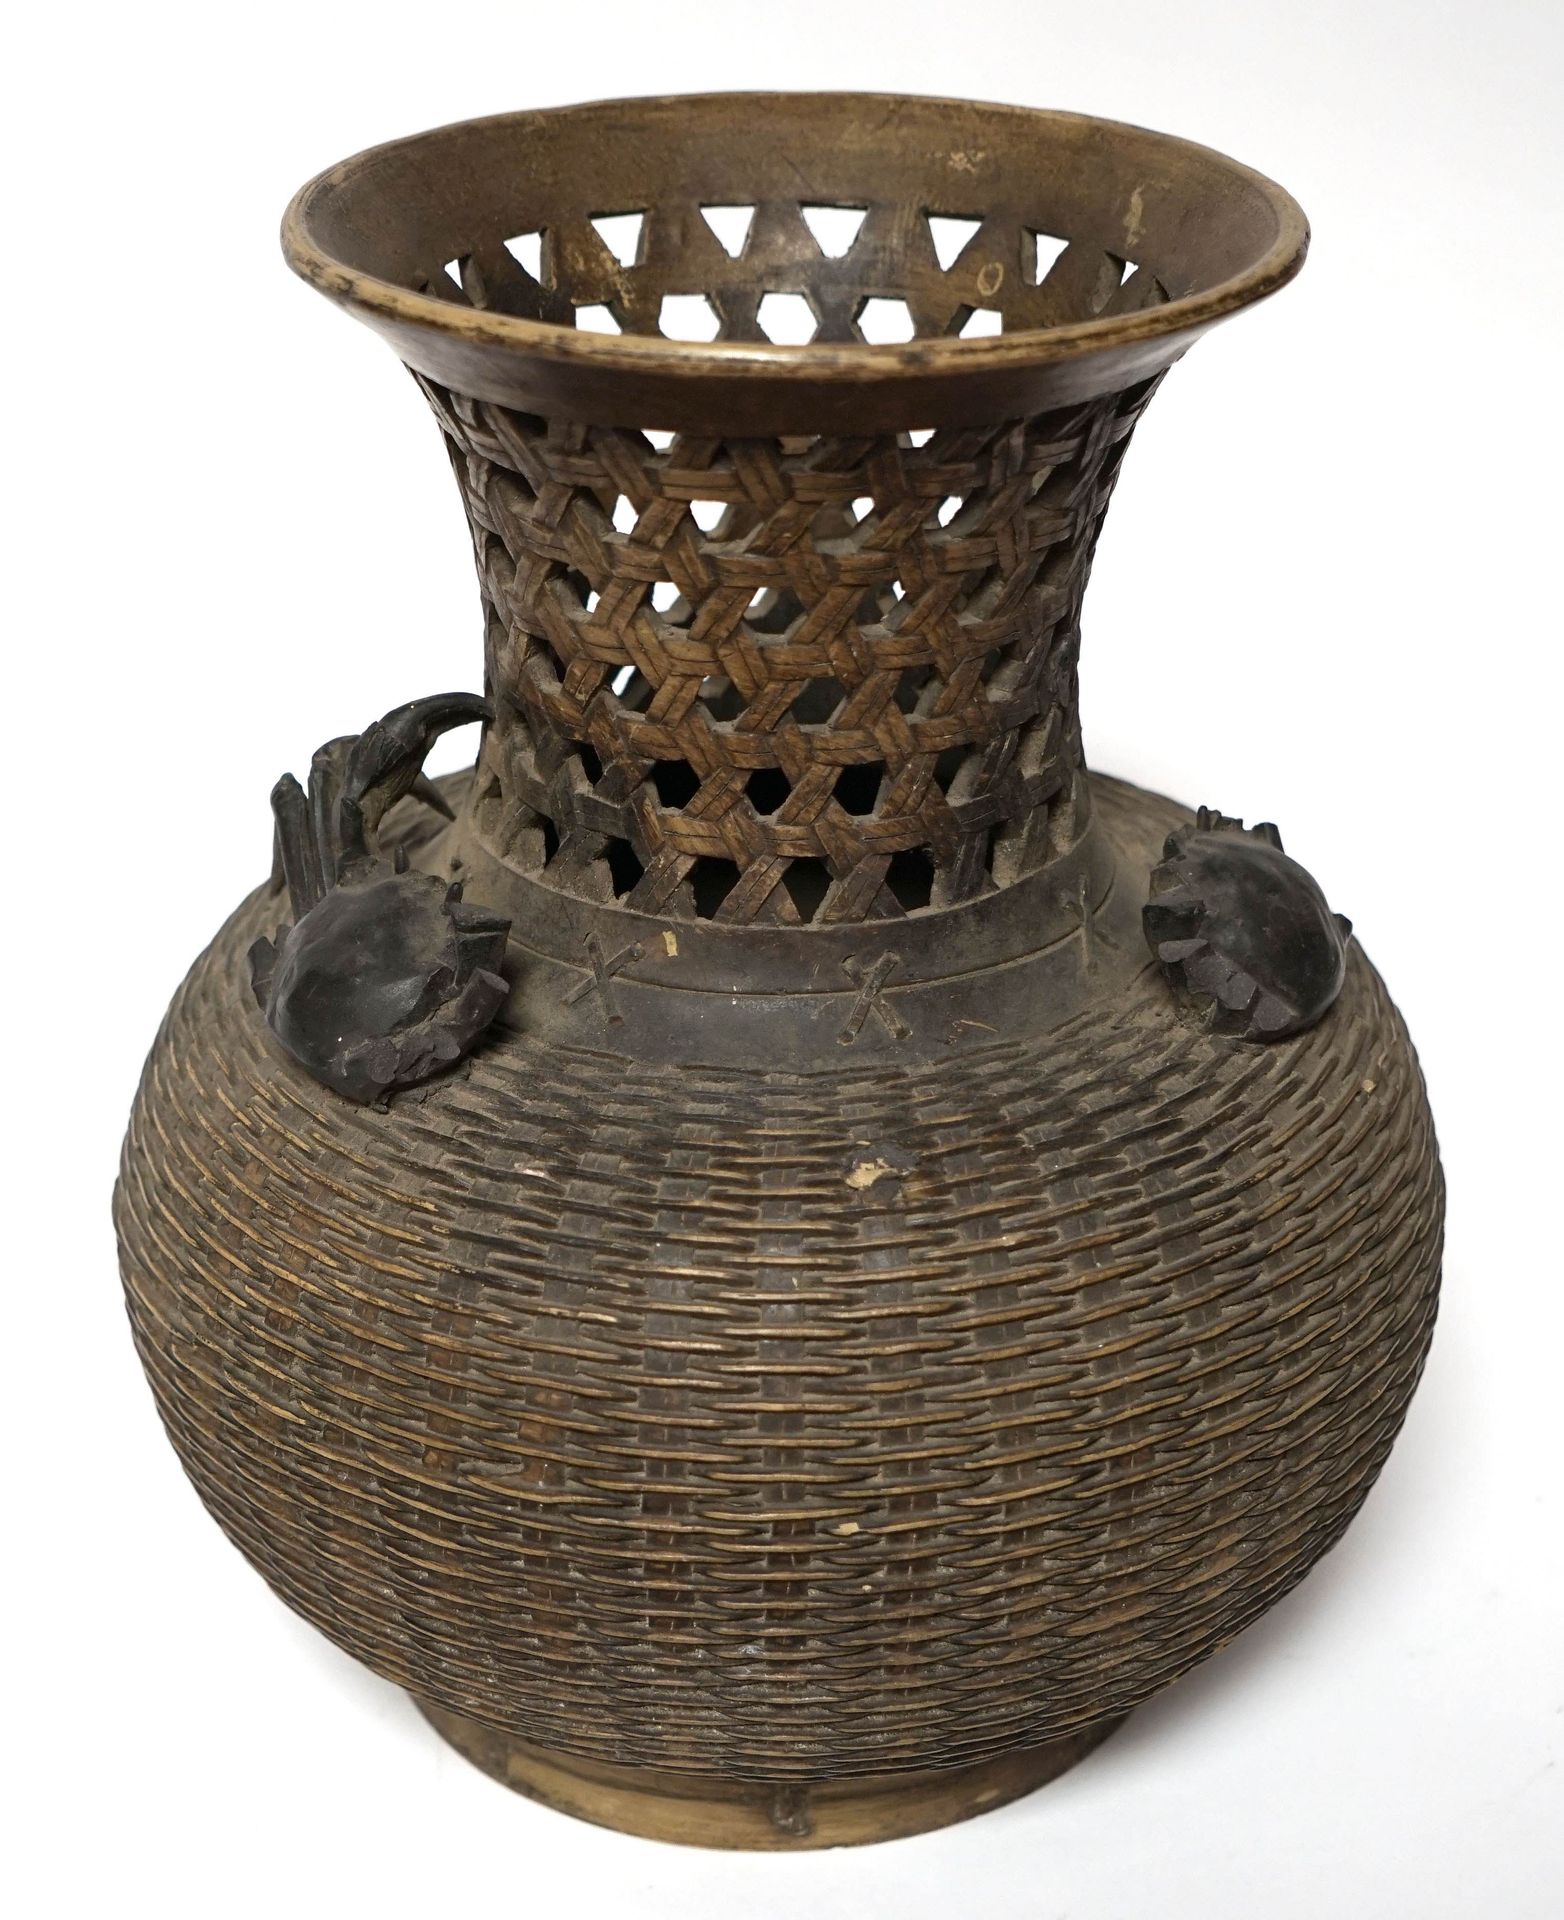 Null 中国。仿篮子形式的大型镂空陶器花瓶，颈部装饰有螃蟹。(损坏和丢失的部件）。)高度34厘米